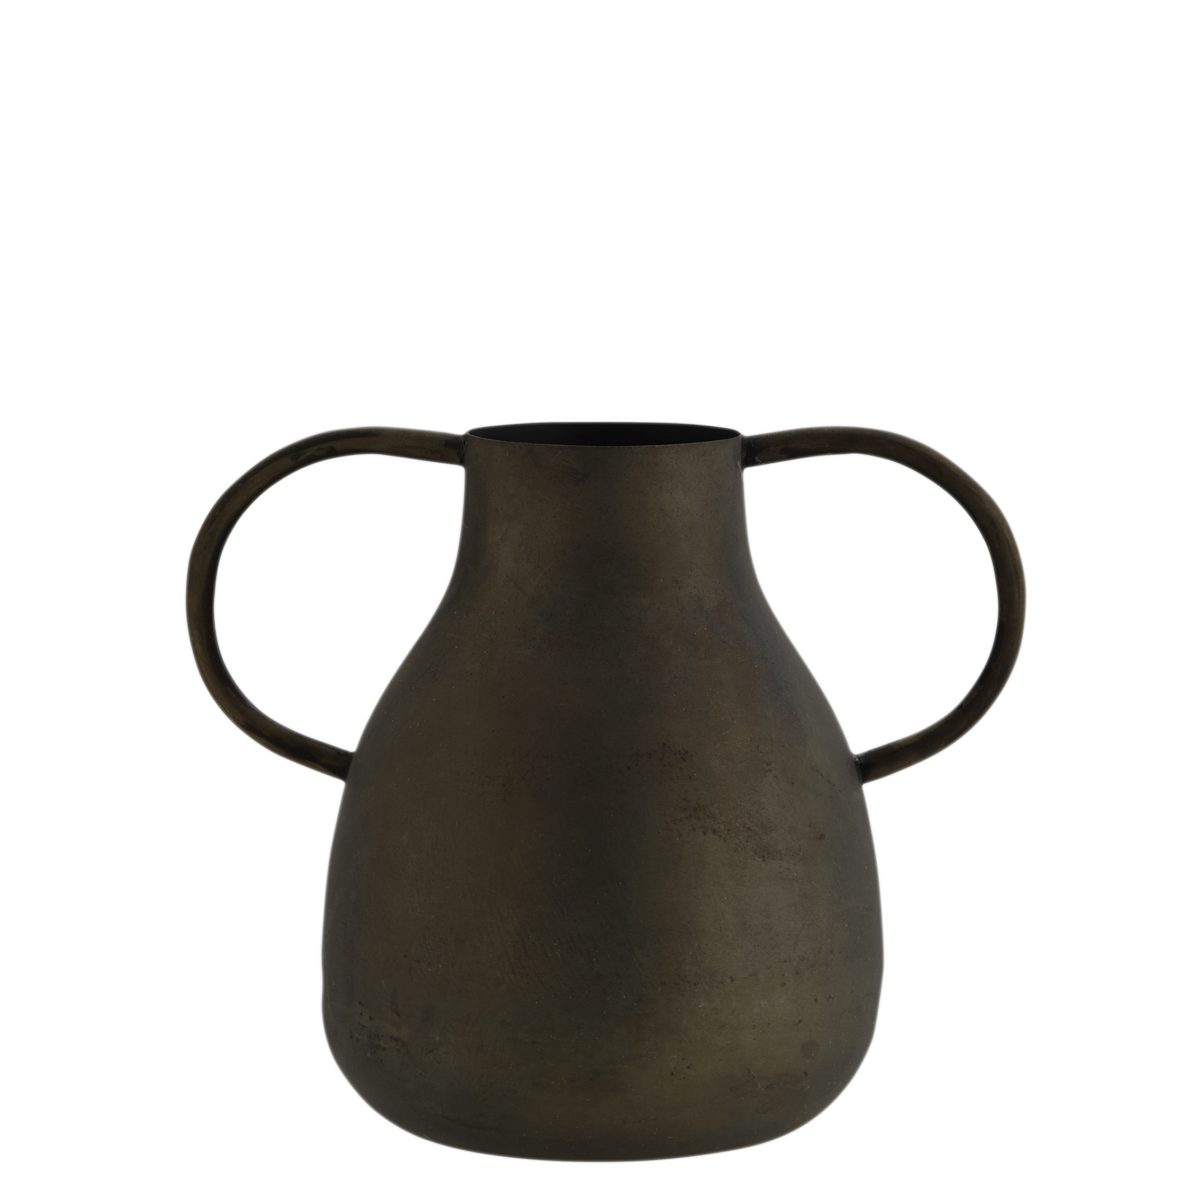 Iron vase w/ handles